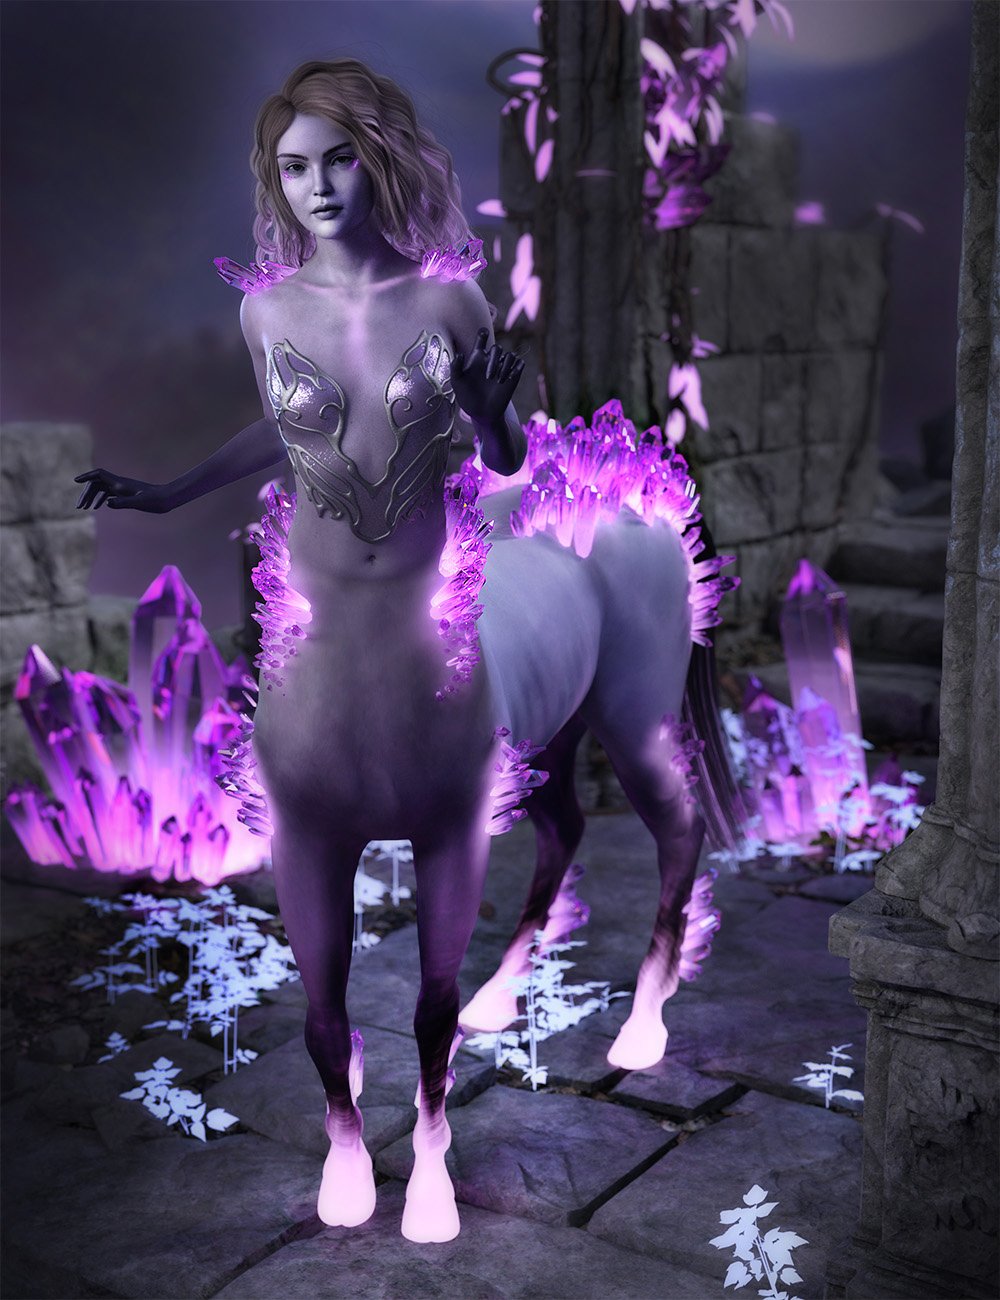 Eleia for Genesis 8 Female Centaur by: SR3, 3D Models by Daz 3D